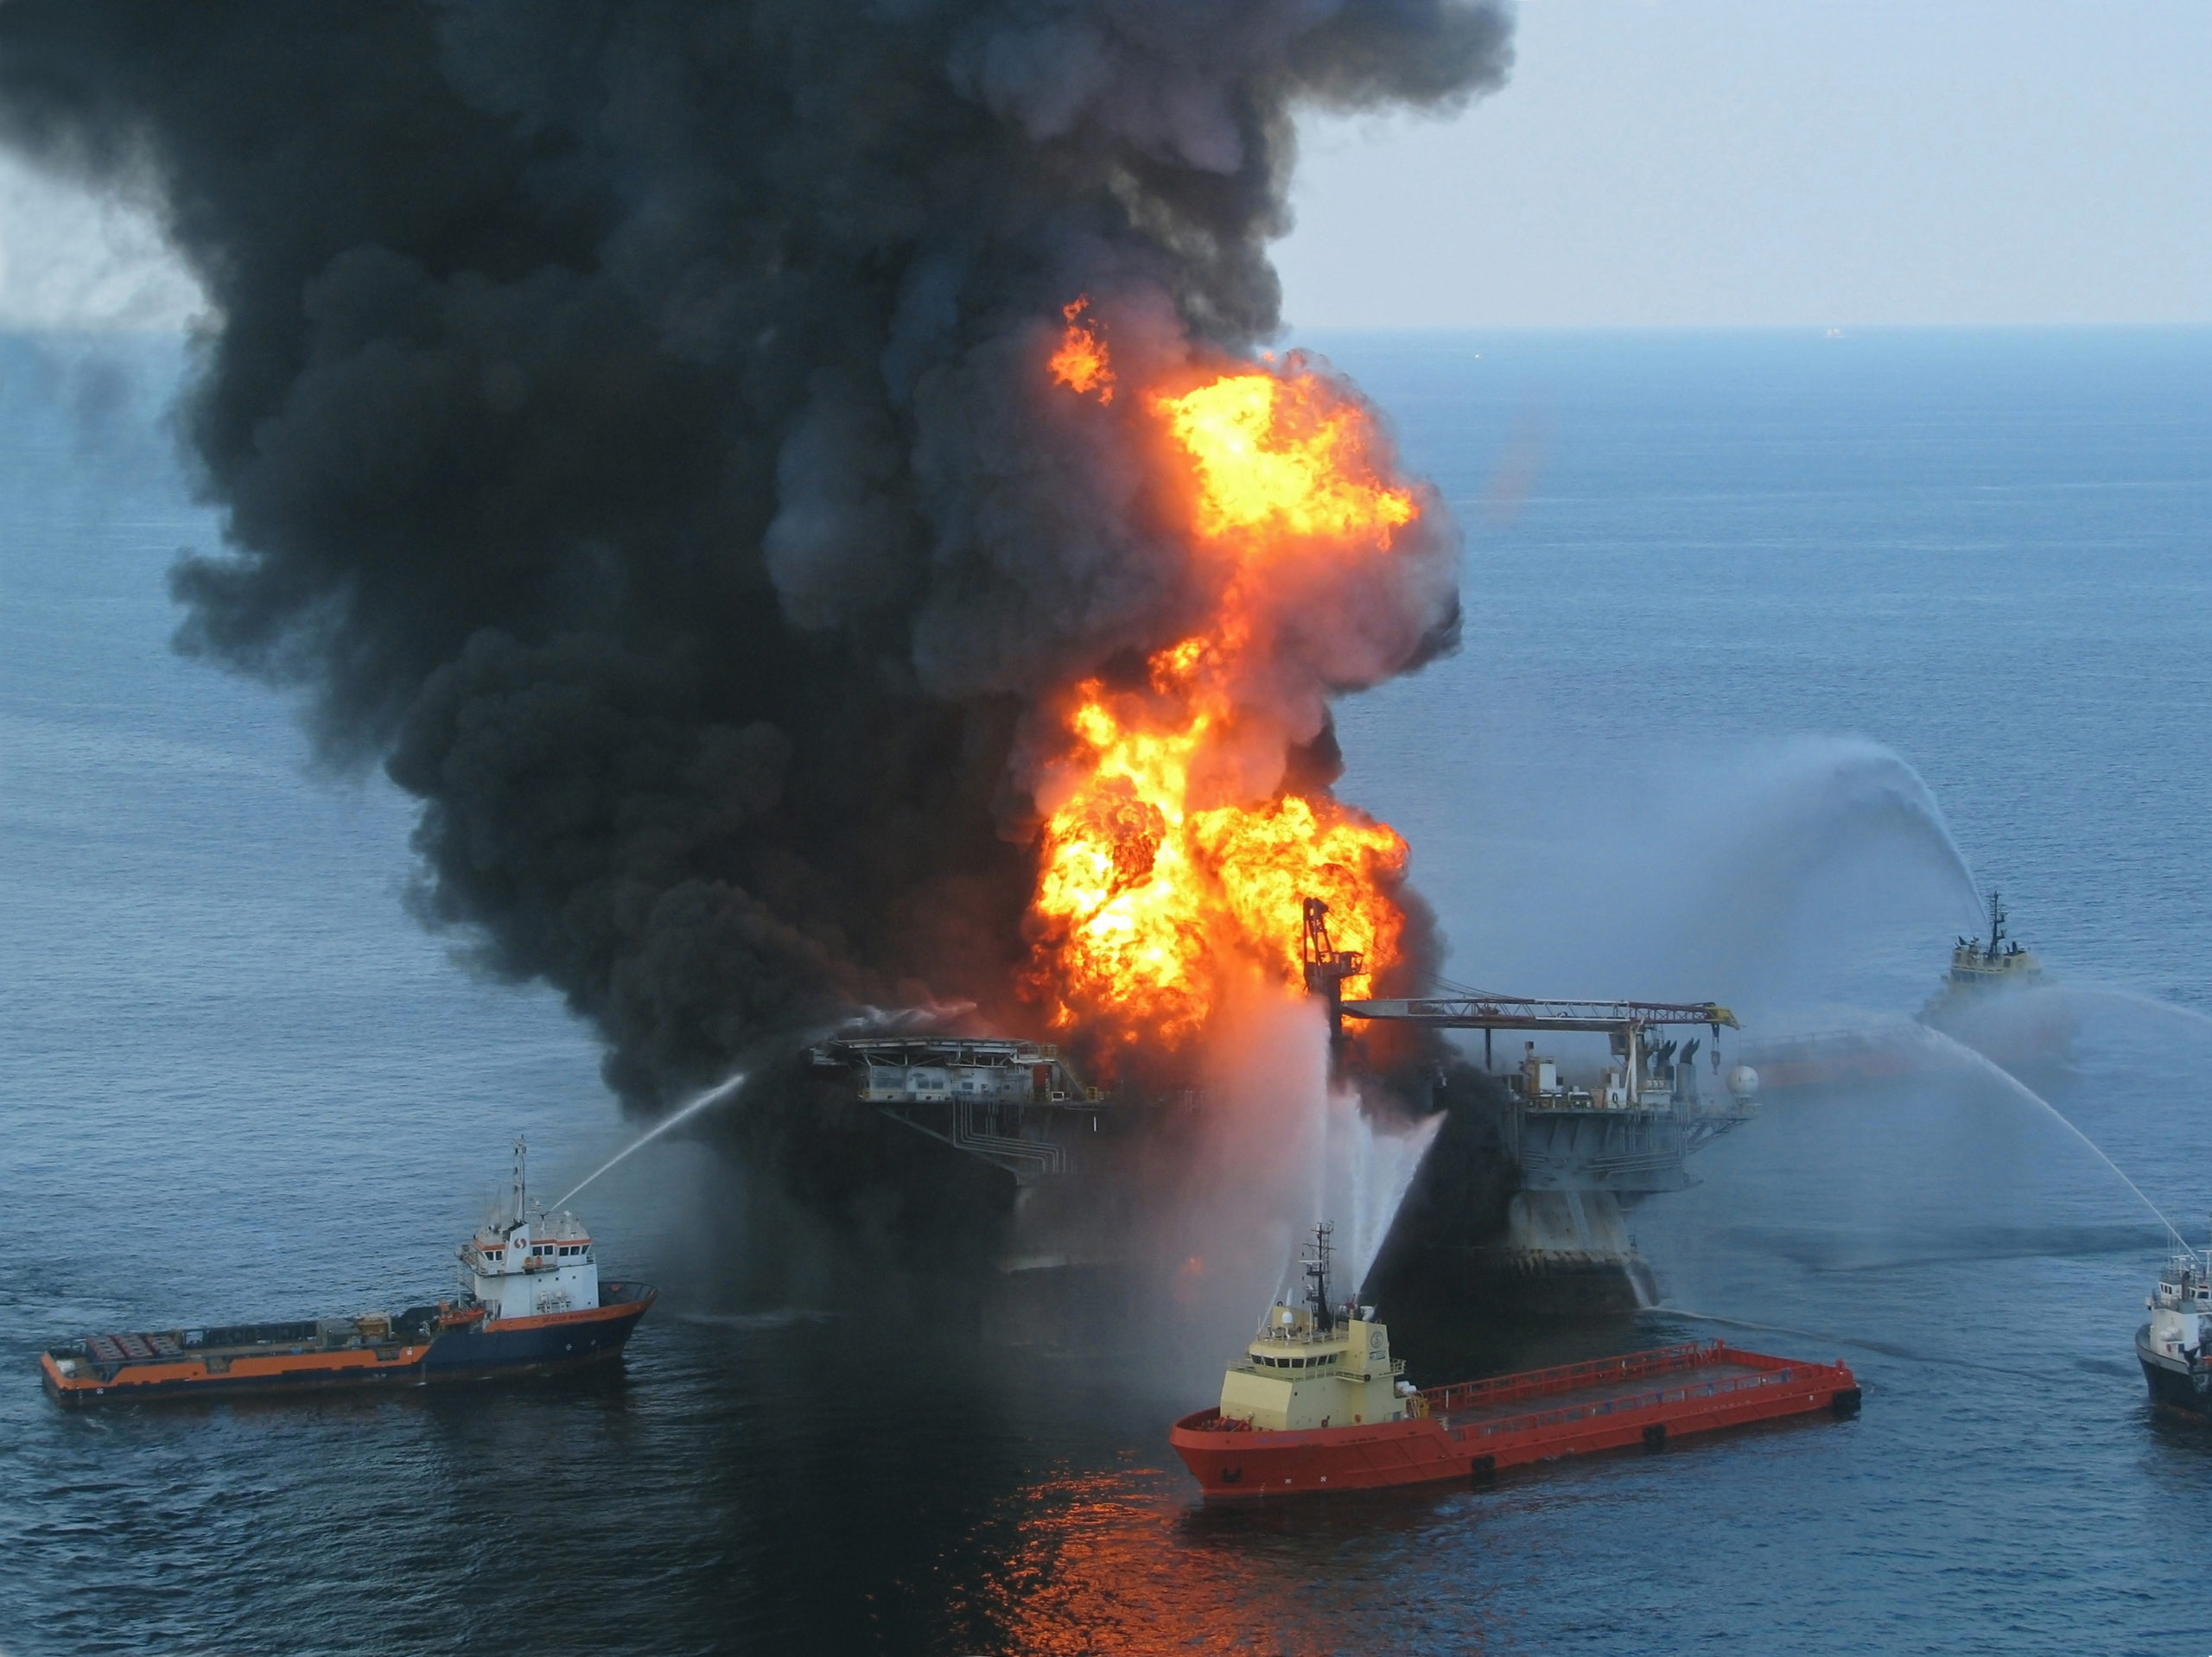 Deepwater horizon oil spill